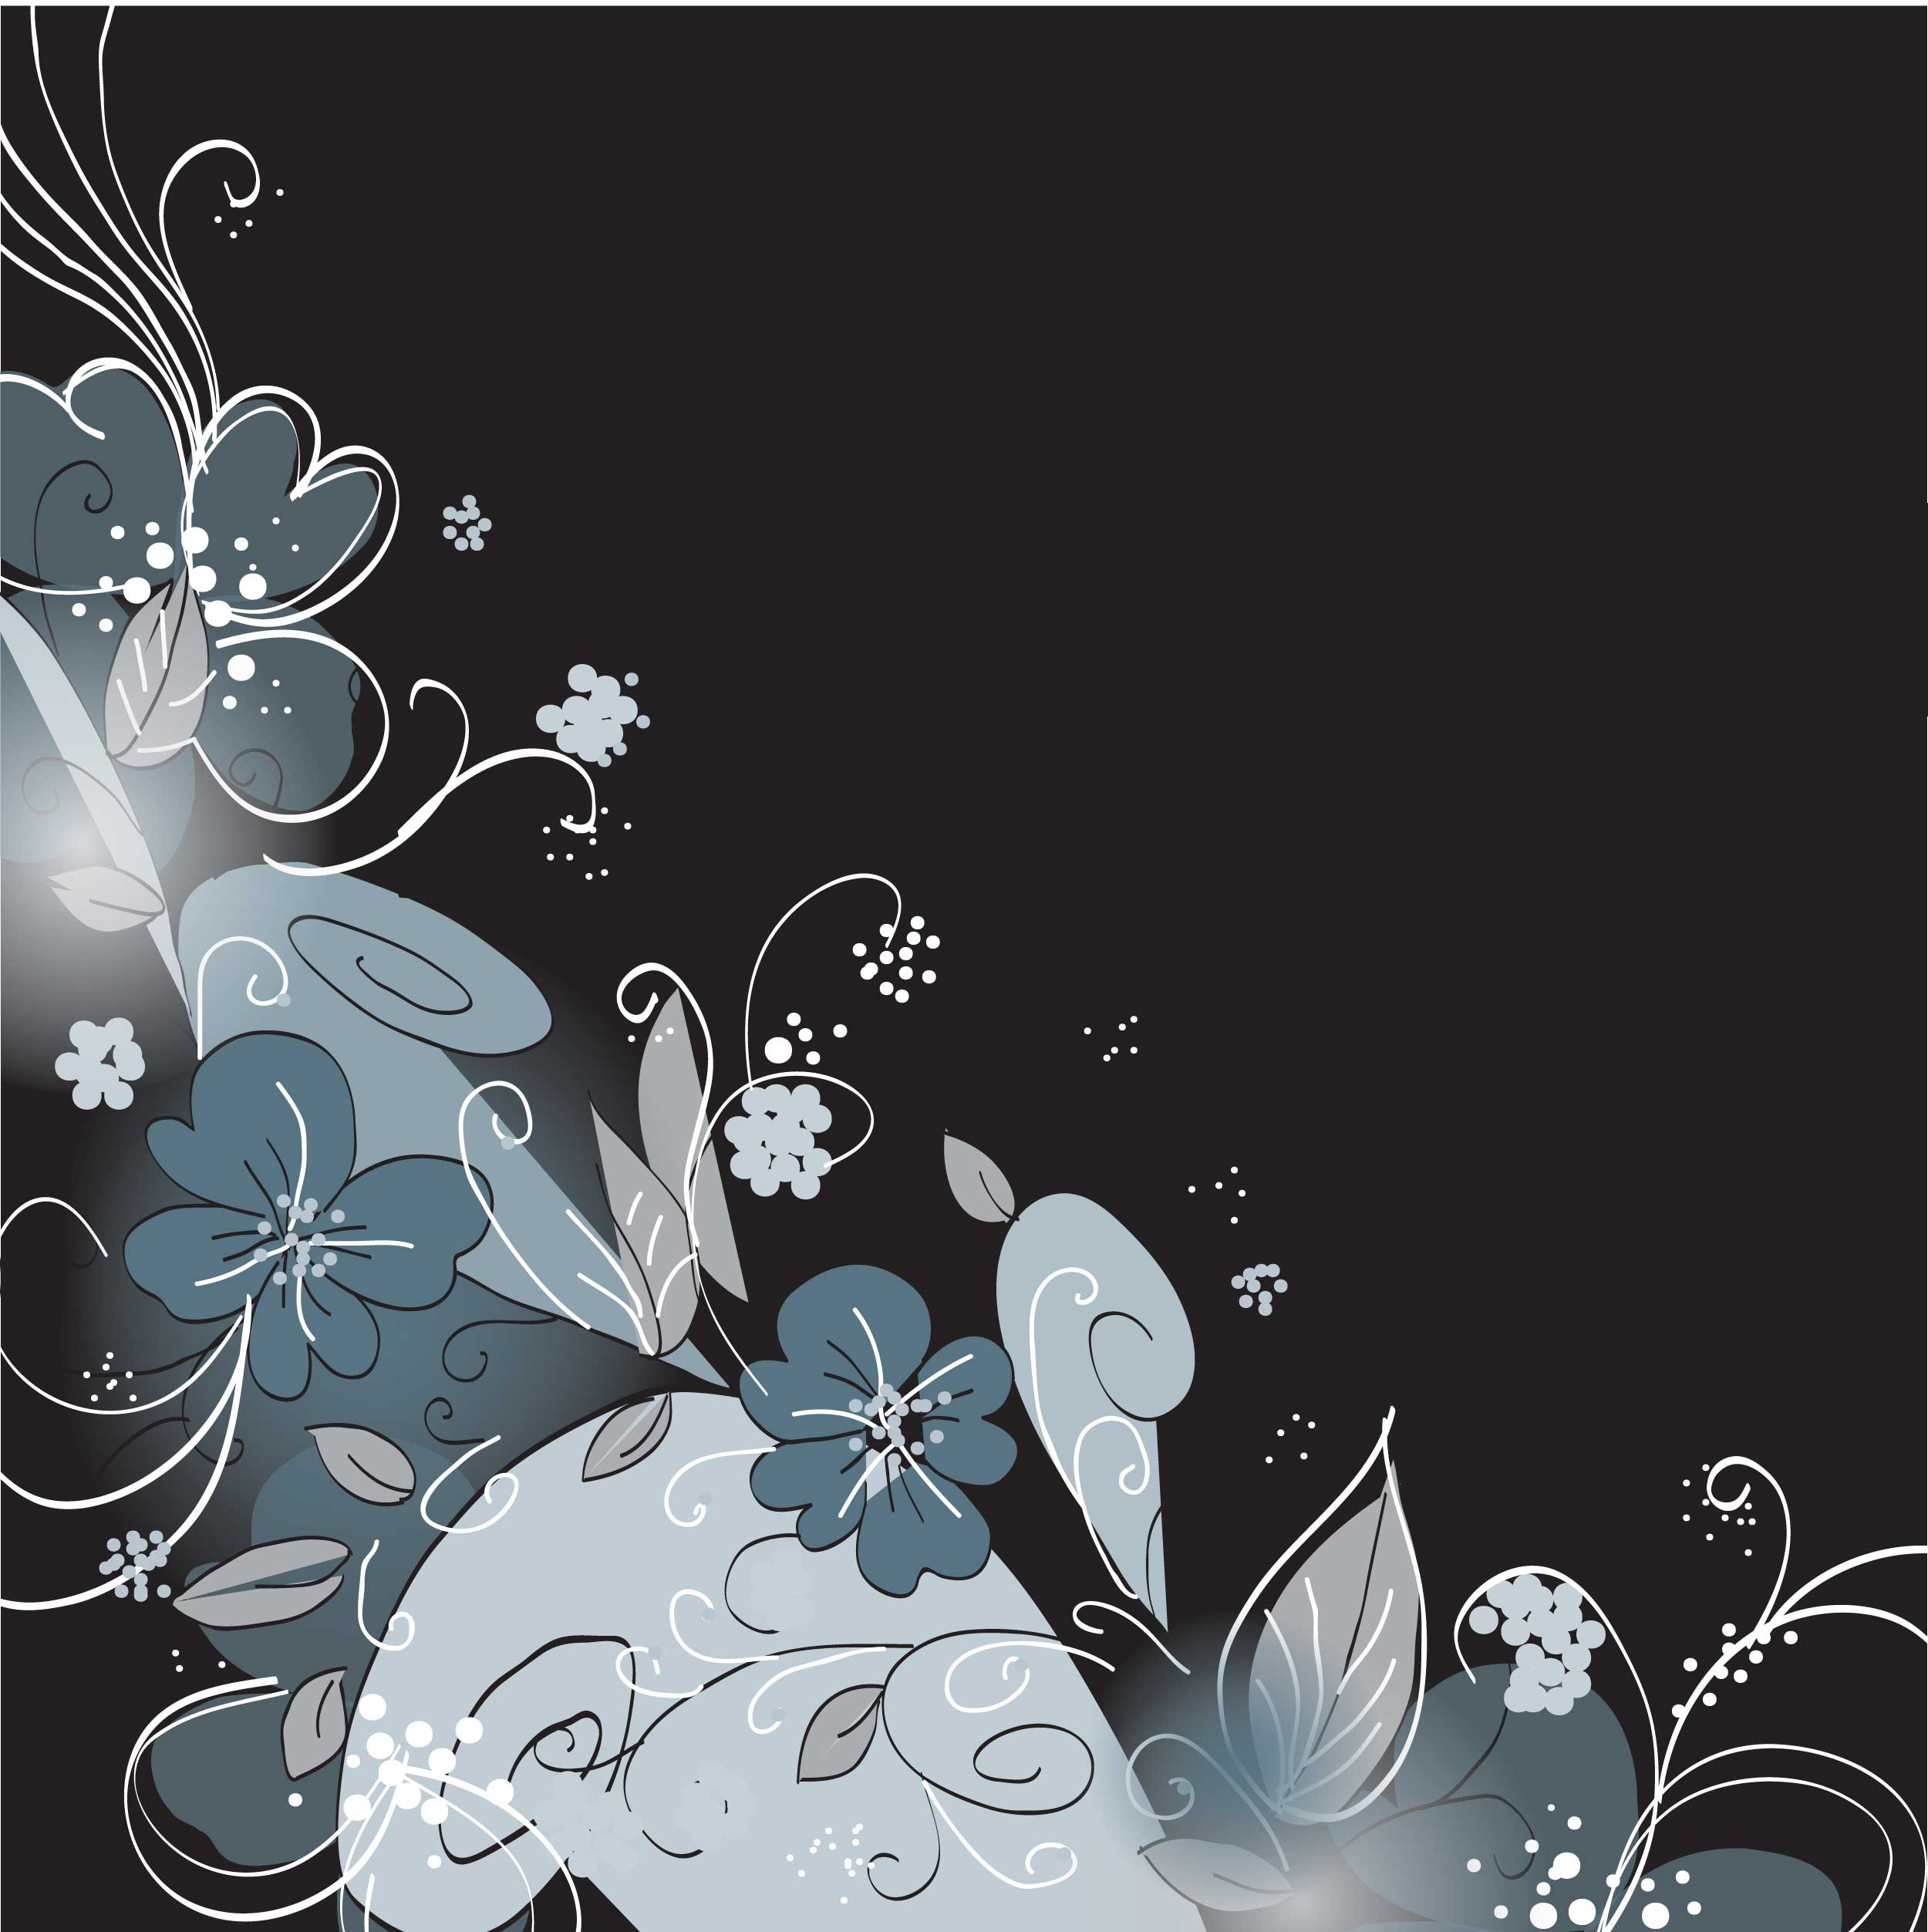 花のイラスト フリー素材 壁紙 背景no 2 シック クール ダーク